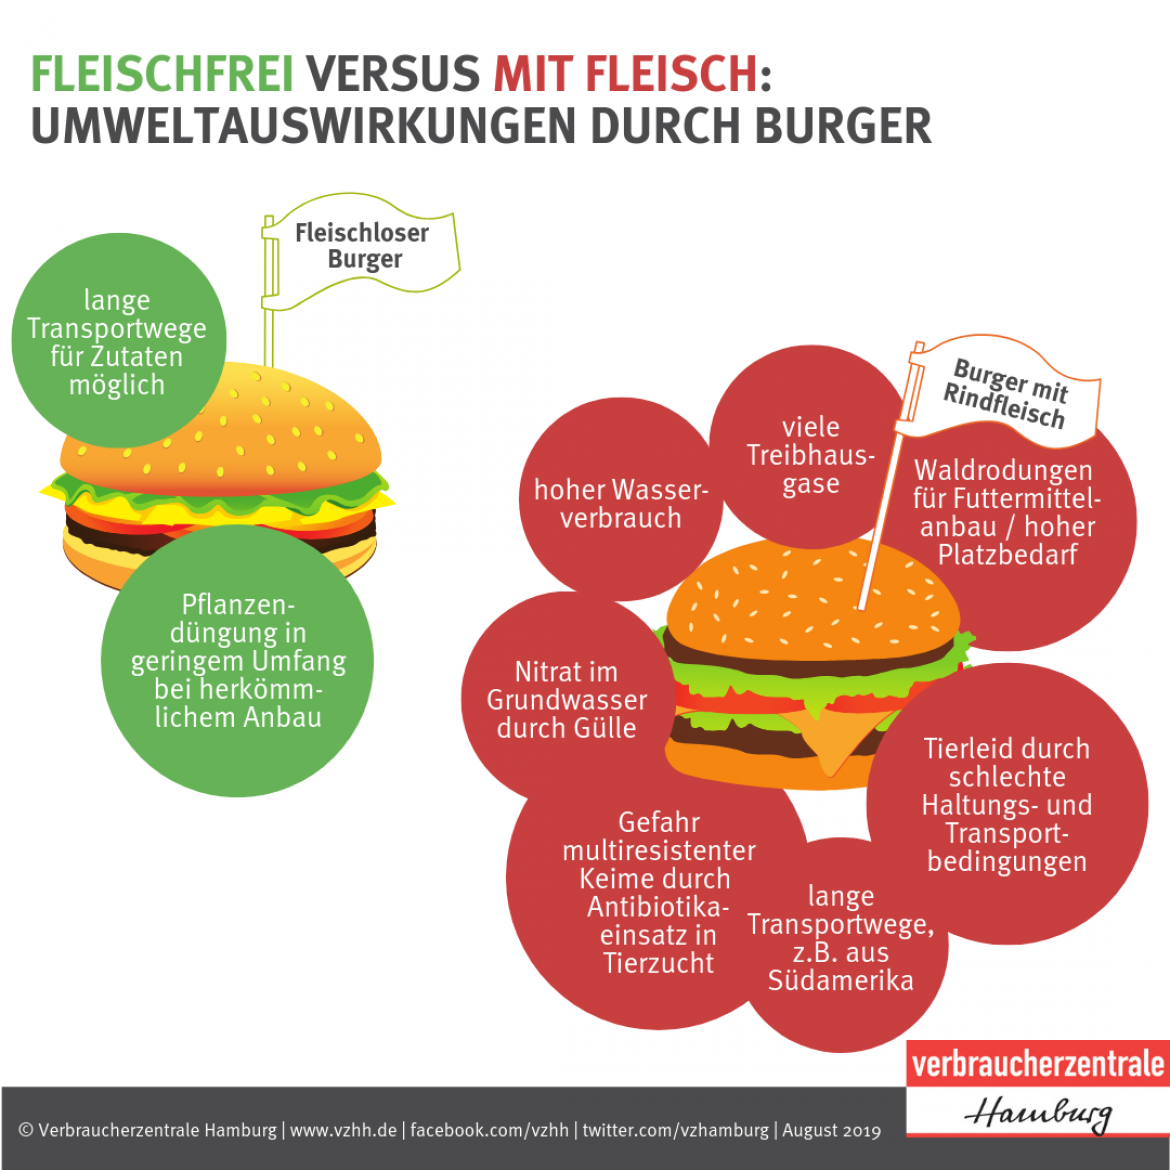 Fleischalternativen: Umweltauswirkungen durch Burger